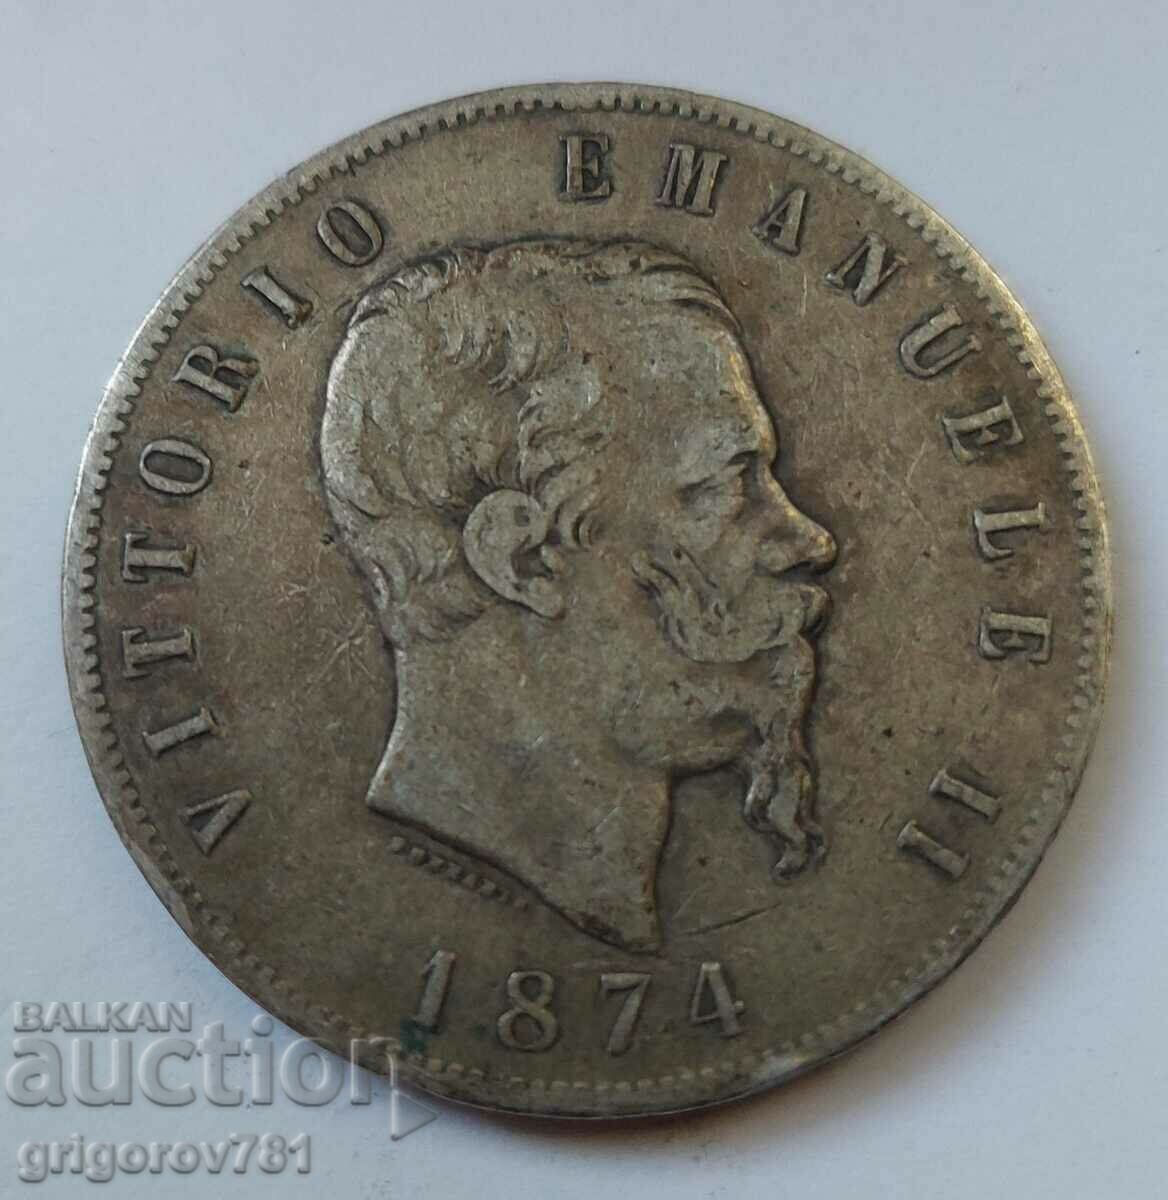 Ασημένιο 5 λίρες Ιταλία 1874 M - ασημένιο νόμισμα